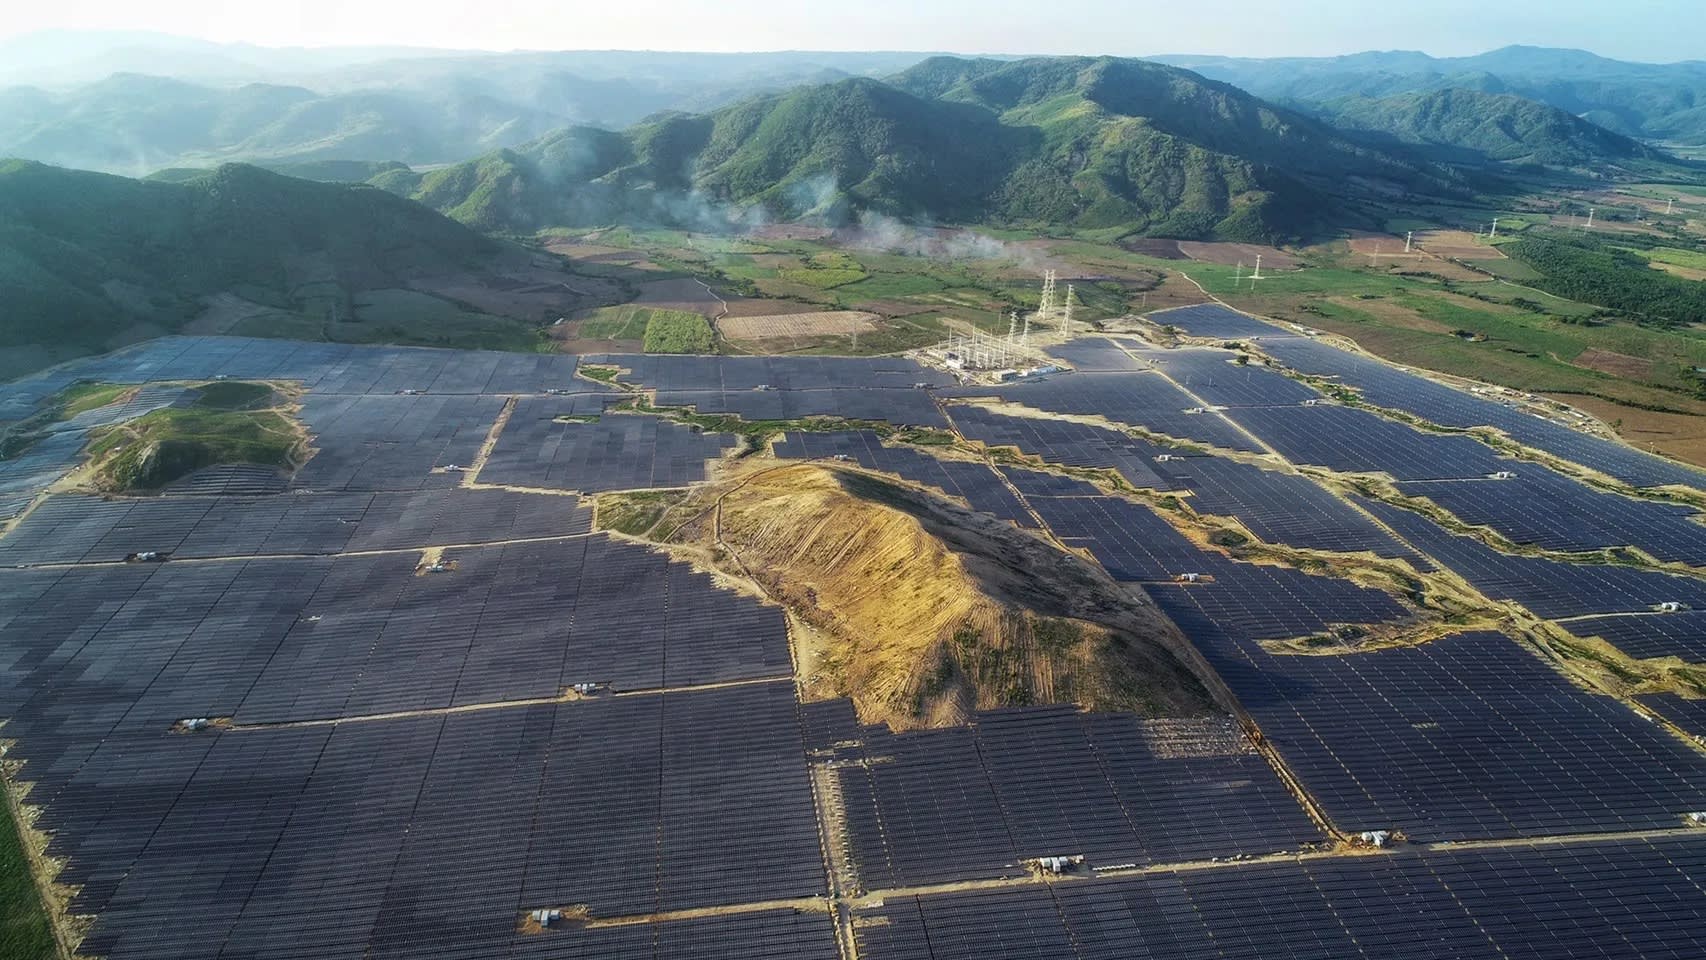 Tập đoàn công nghiệp Thái Lan xây dựng 2 trang trại năng lượng mặt trời lớn tại Việt Nam